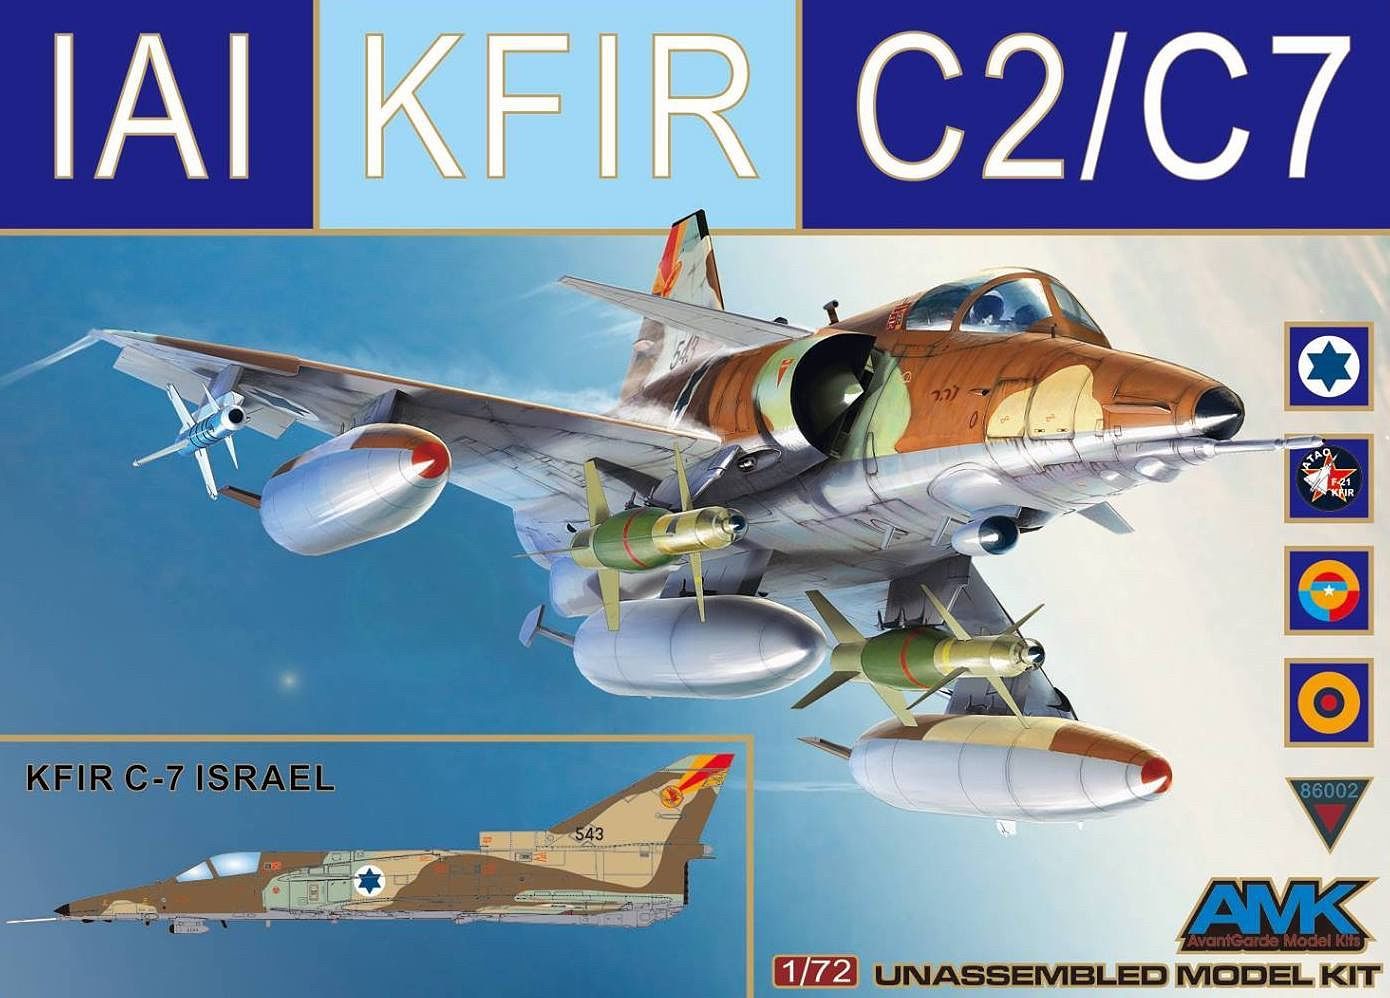 86002  авиация  Kfir C.2/C.7  (1:72)